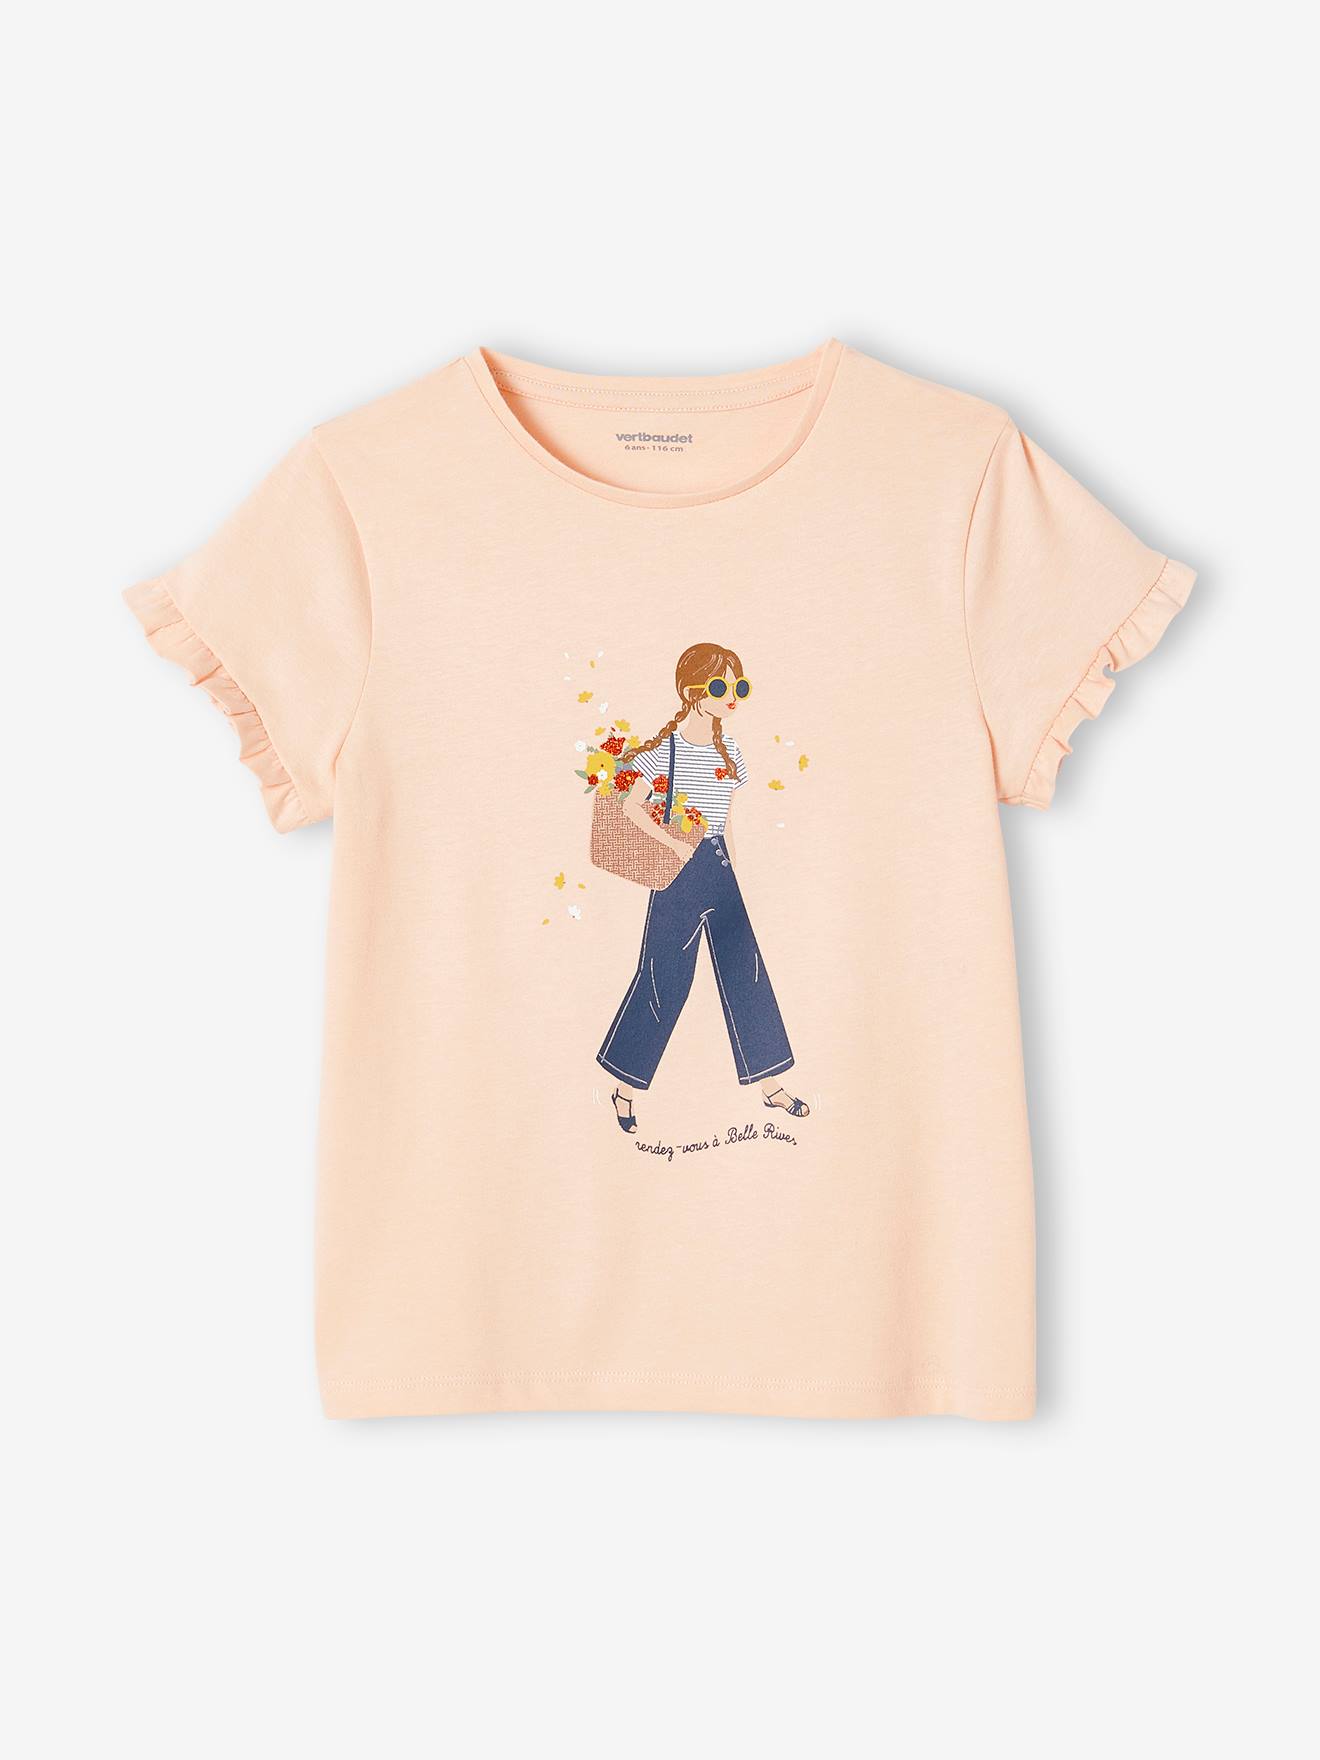 Mädchen T-Shirt Oeko-Tex von Vertbaudet